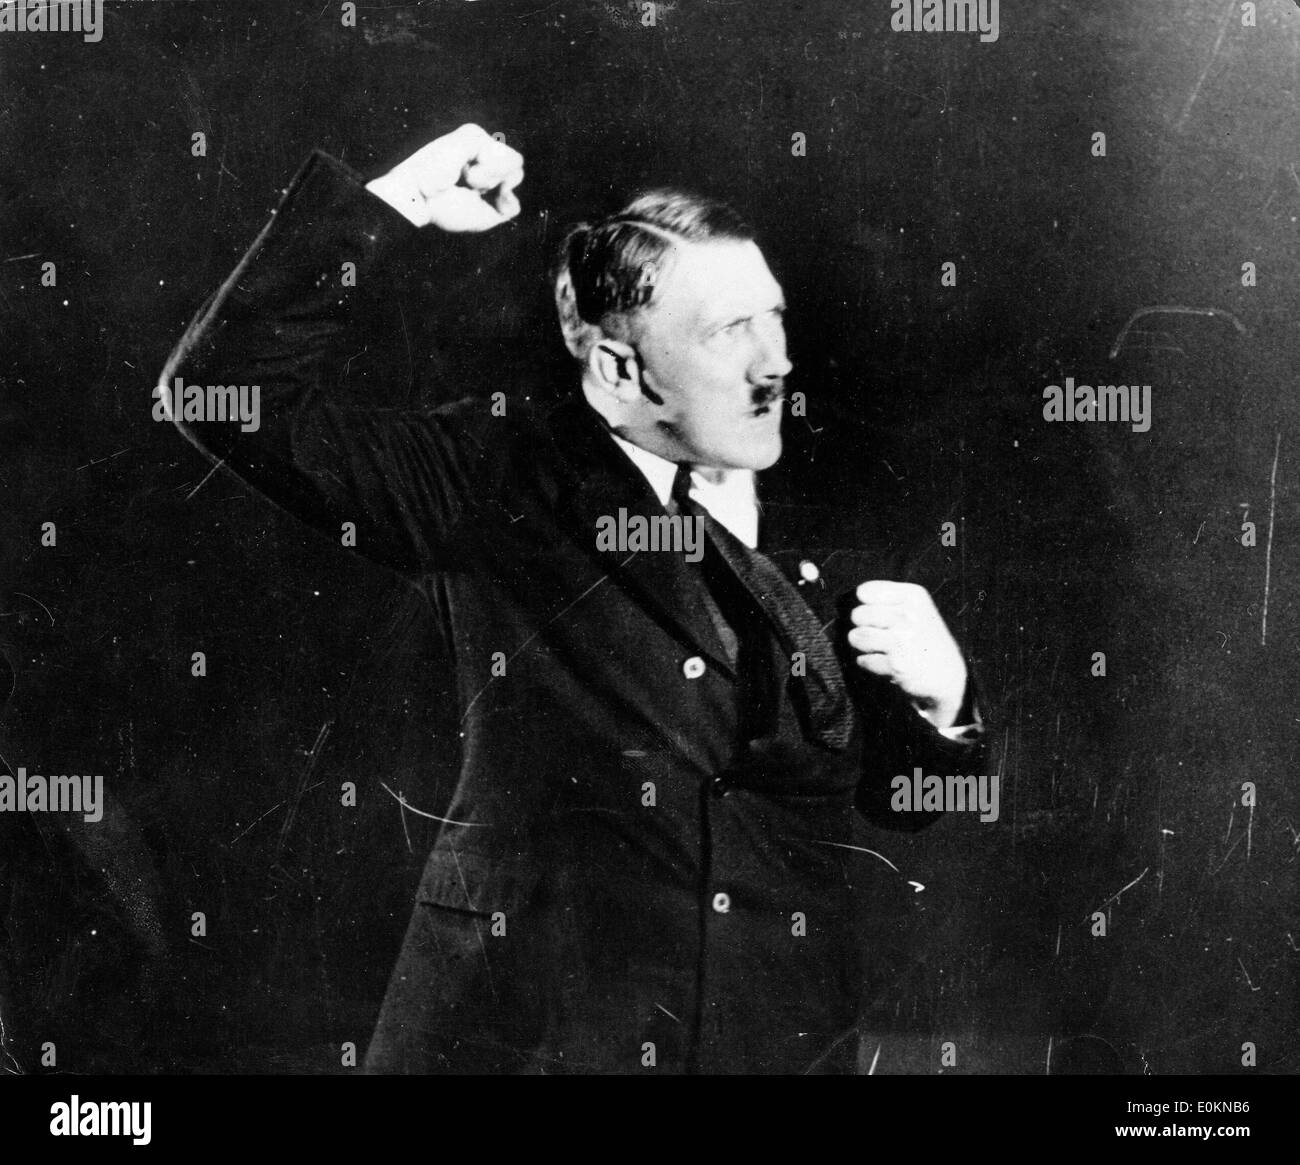 Gen 01, 1925 - Berlino, Germania - File foto: circa 1920s-1930s. ADOLF HITLER dando uno dei suoi discorsi. Foto Stock